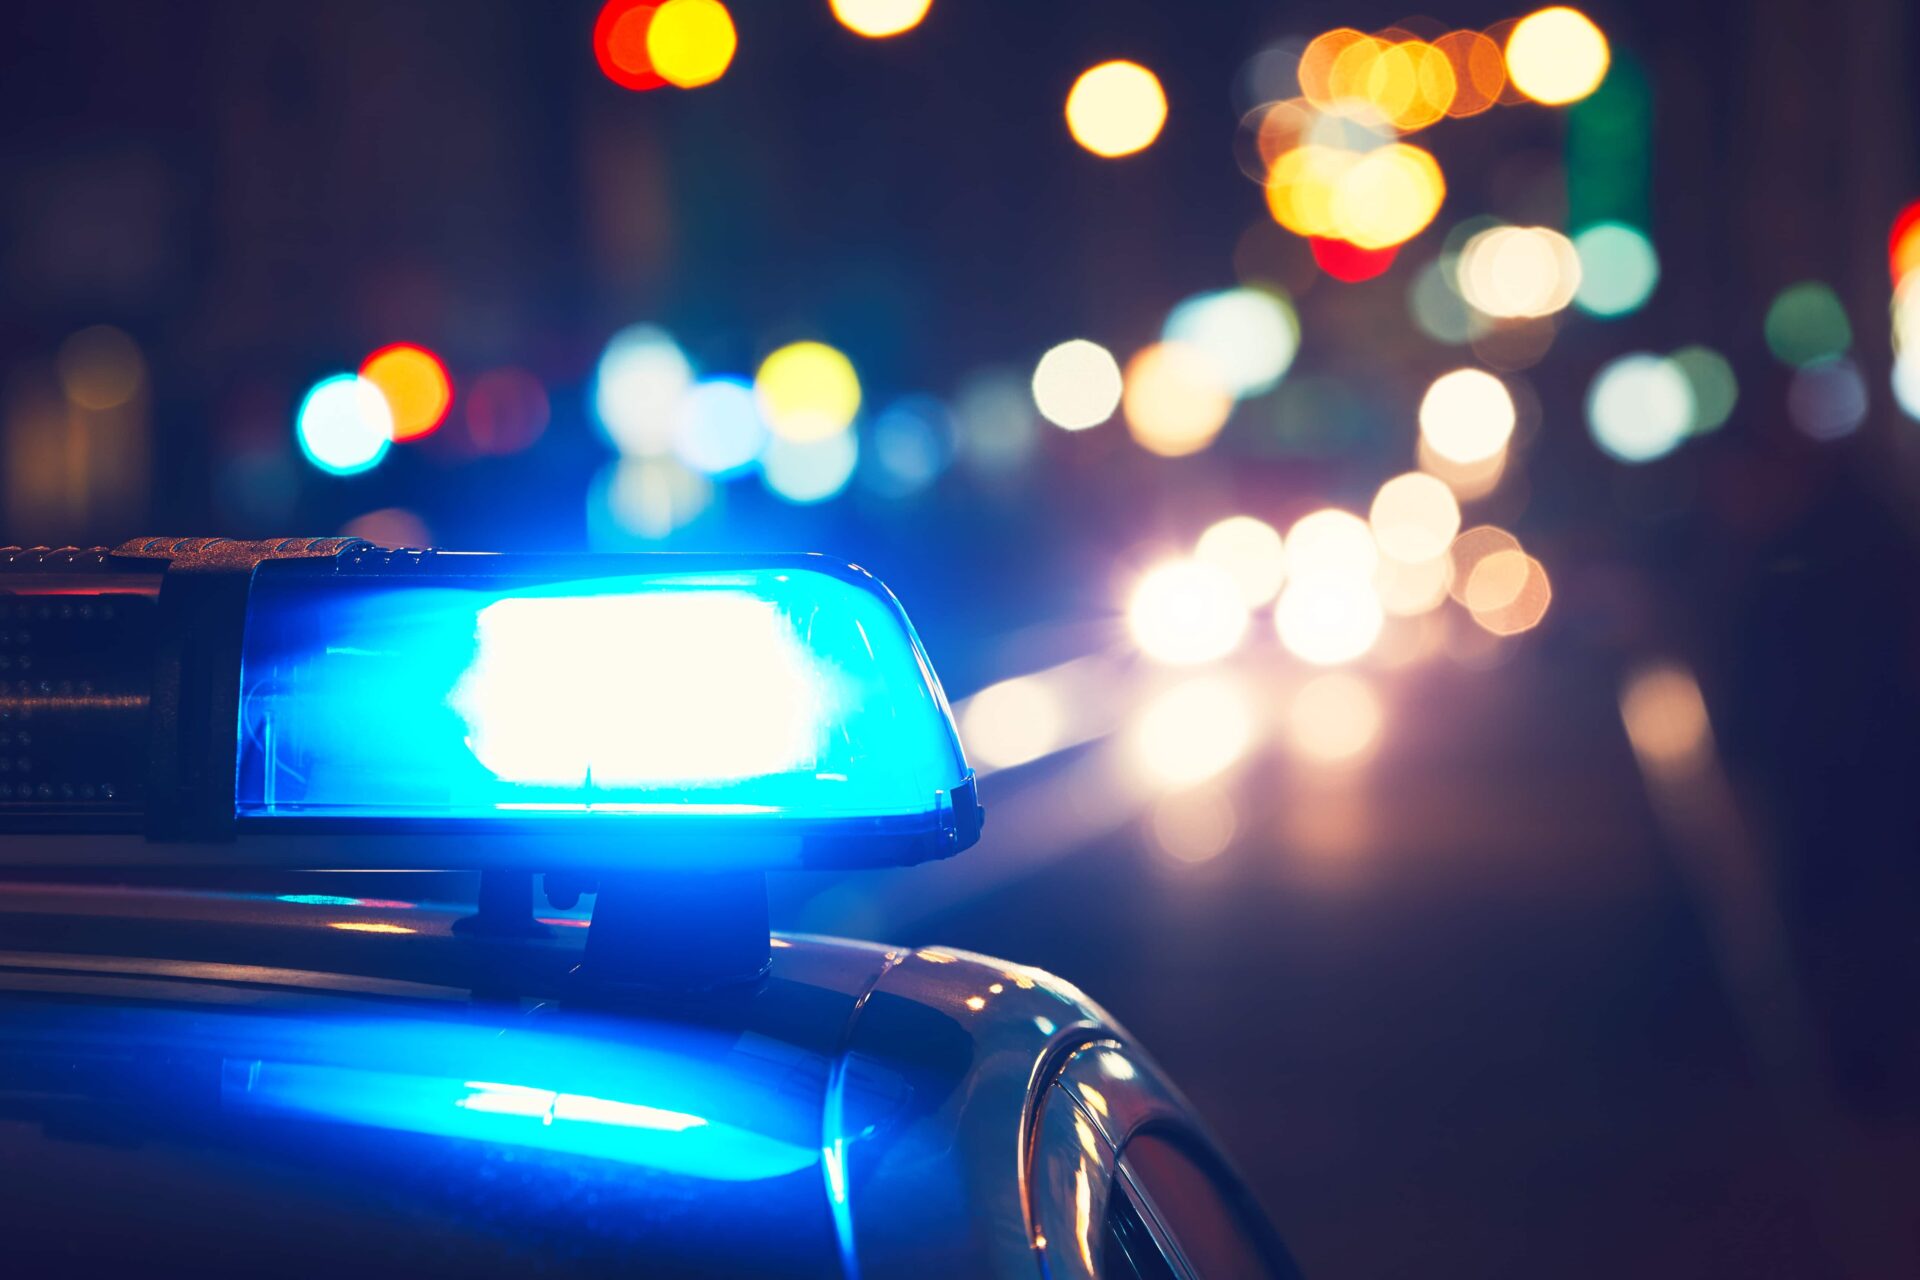 Rollerfahrer unter Drogeneinfluss steuert direkt auf Polizeibeamten zu